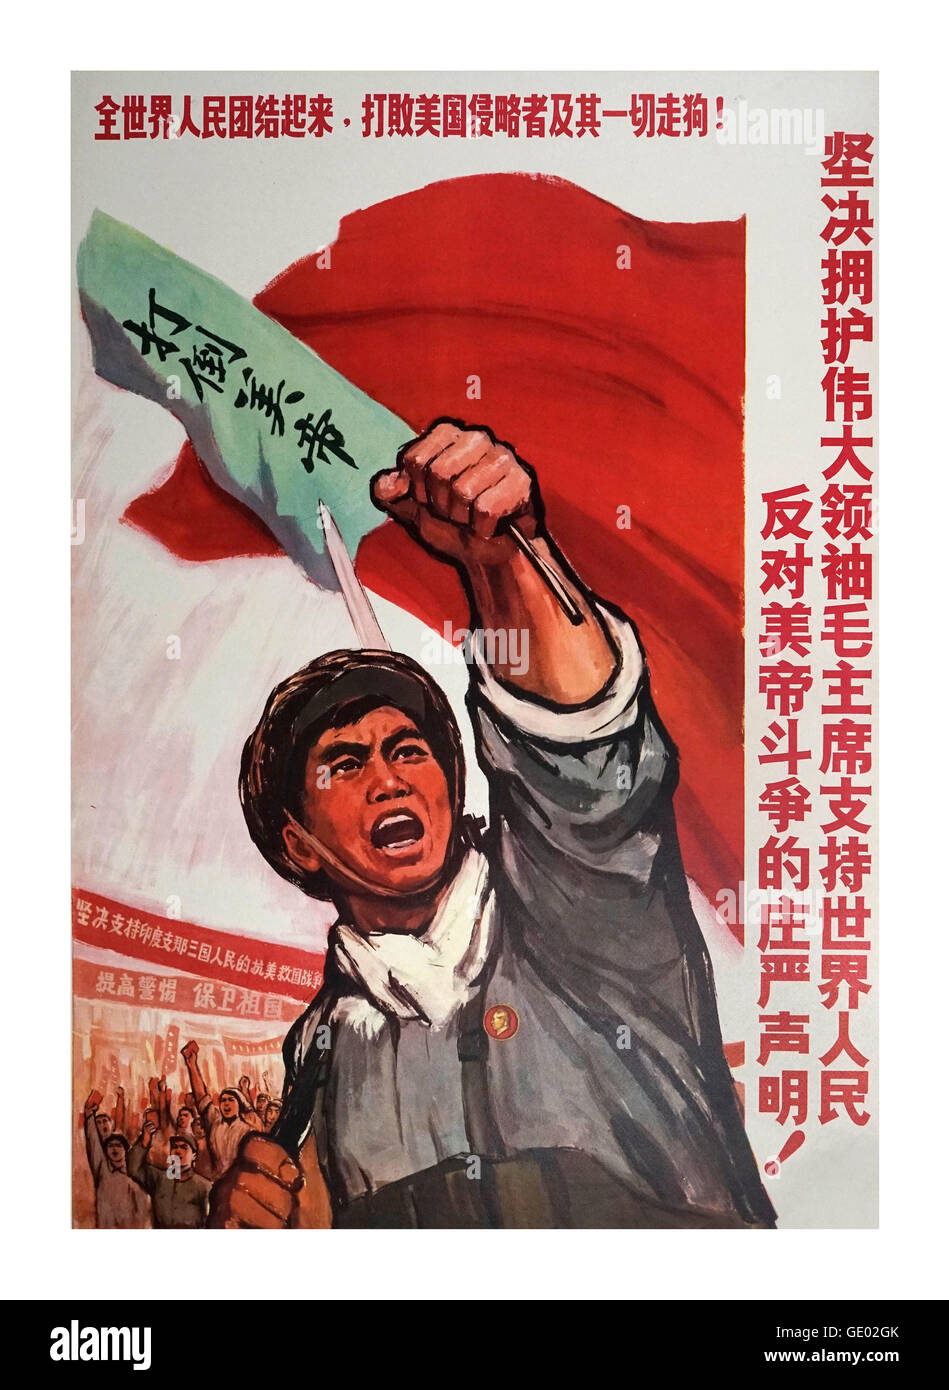 Les Affiches de propagande de la Chine des années 1960, illustrent le communisme chinois Banque D'Images